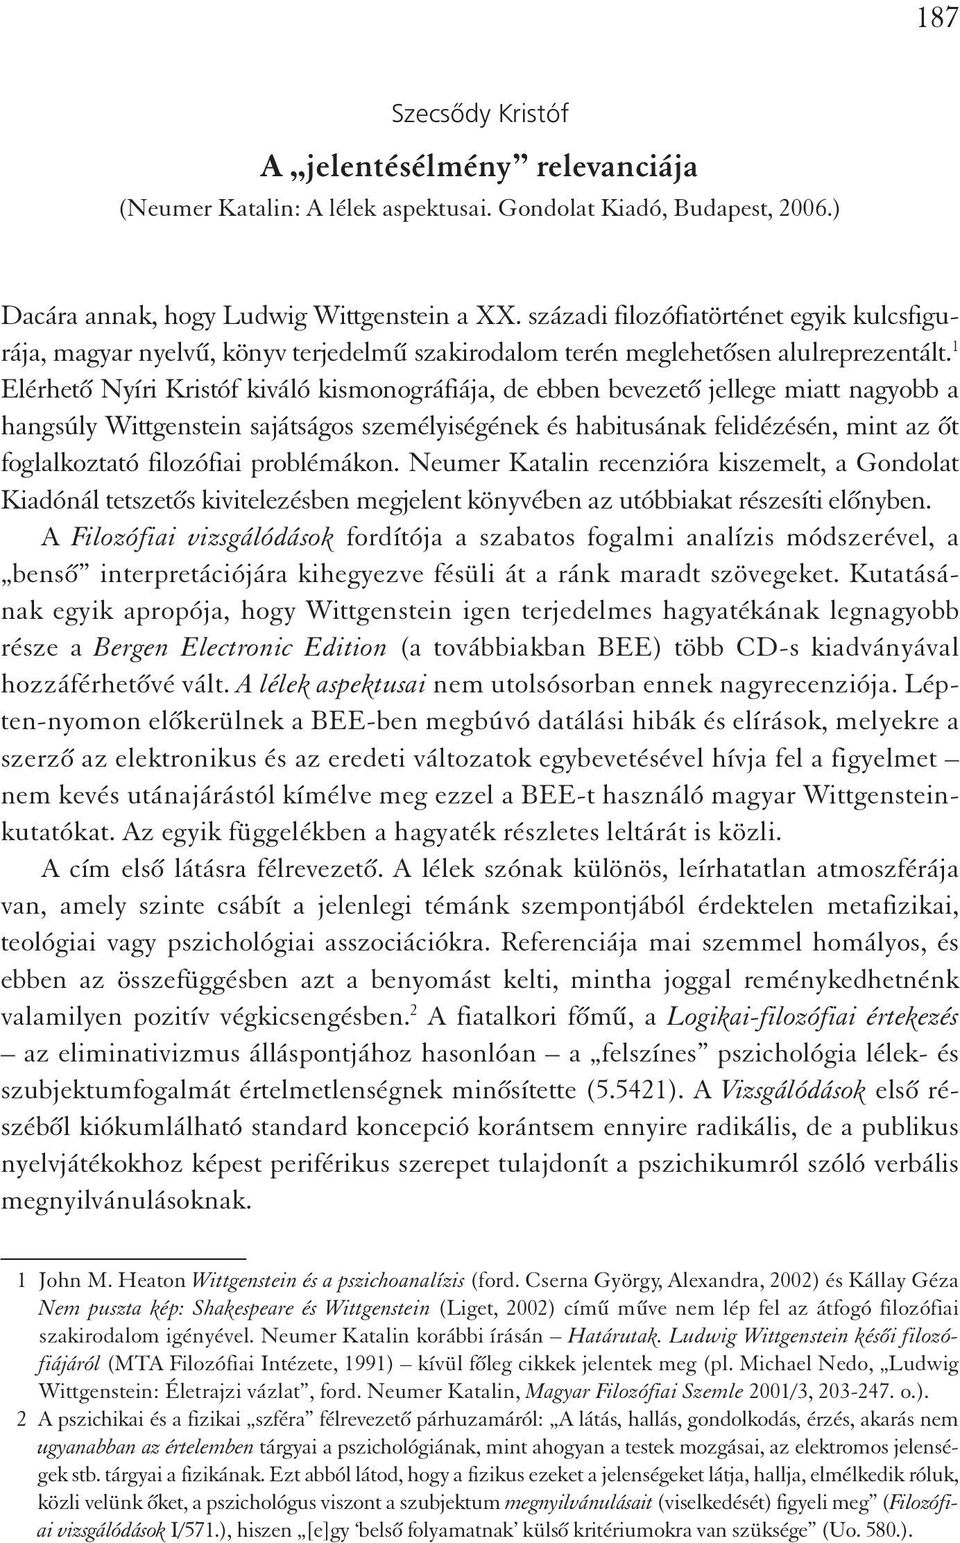 1 Elérhető Nyíri Kristóf kiváló kismonográfiája, de ebben bevezető jellege miatt nagyobb a hangsúly Wittgenstein sajátságos személyiségének és habitusának felidézésén, mint az őt foglalkoztató